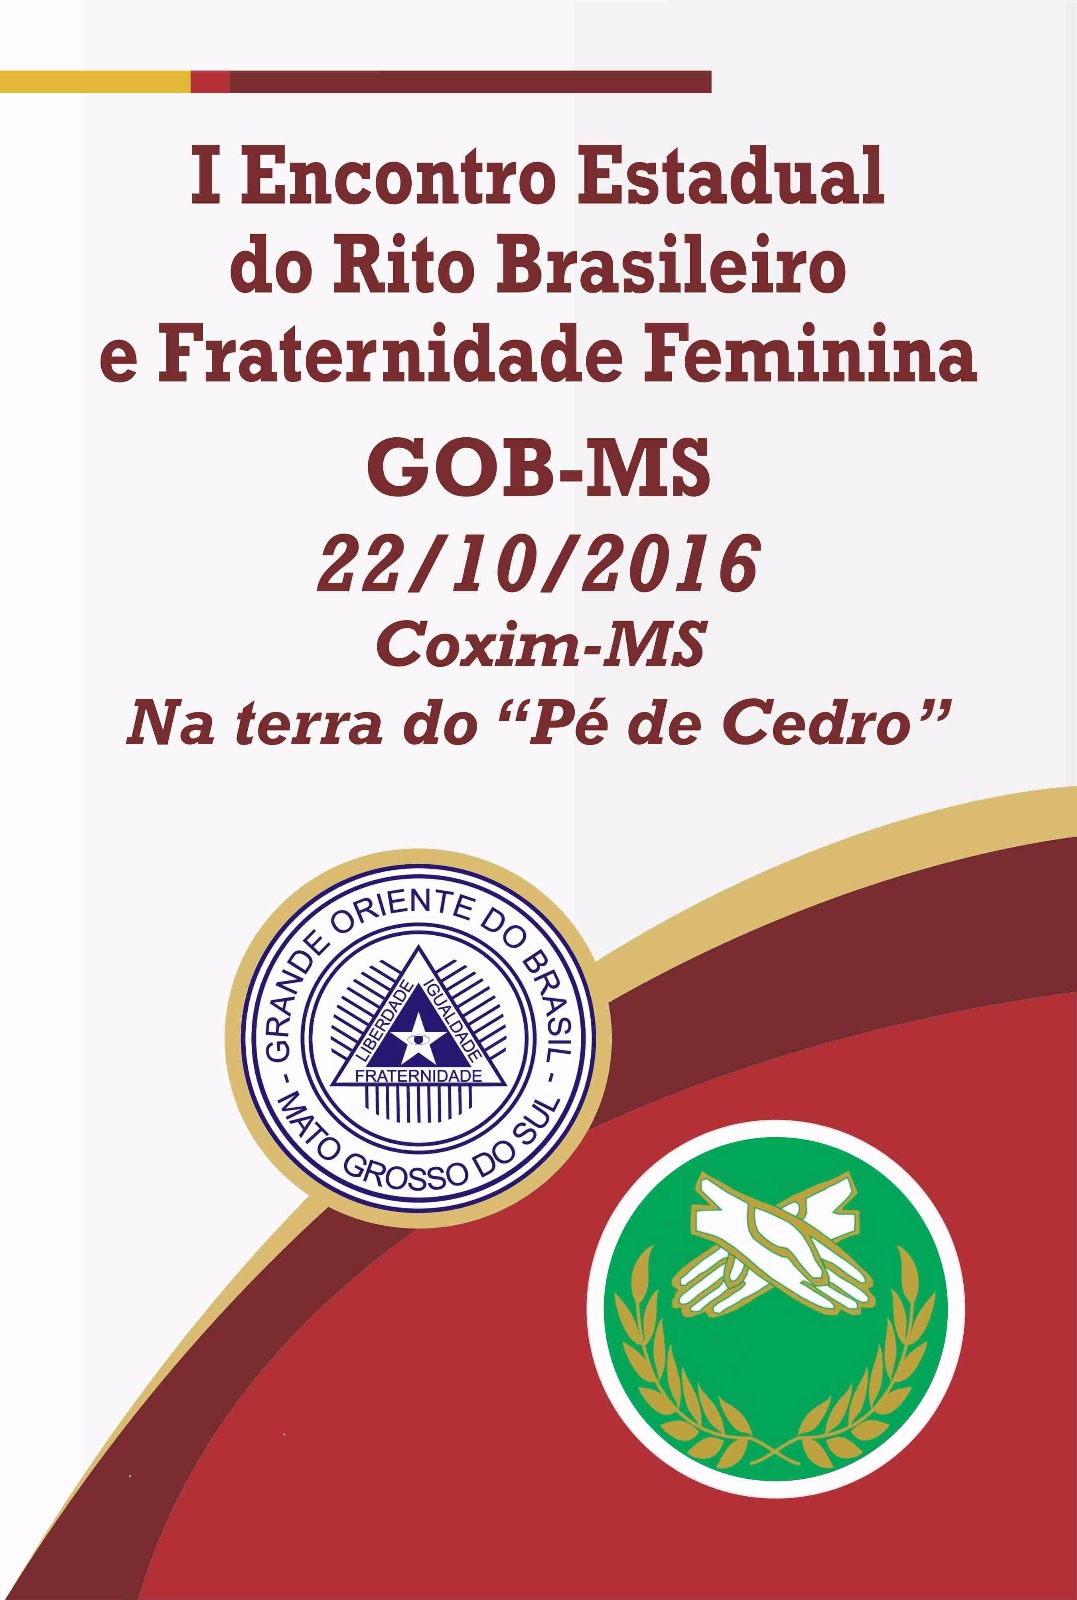 Read more about the article I Encontro Estadual do Rito Brasileiro (ENERBRAS) e Fraternidade Feminina